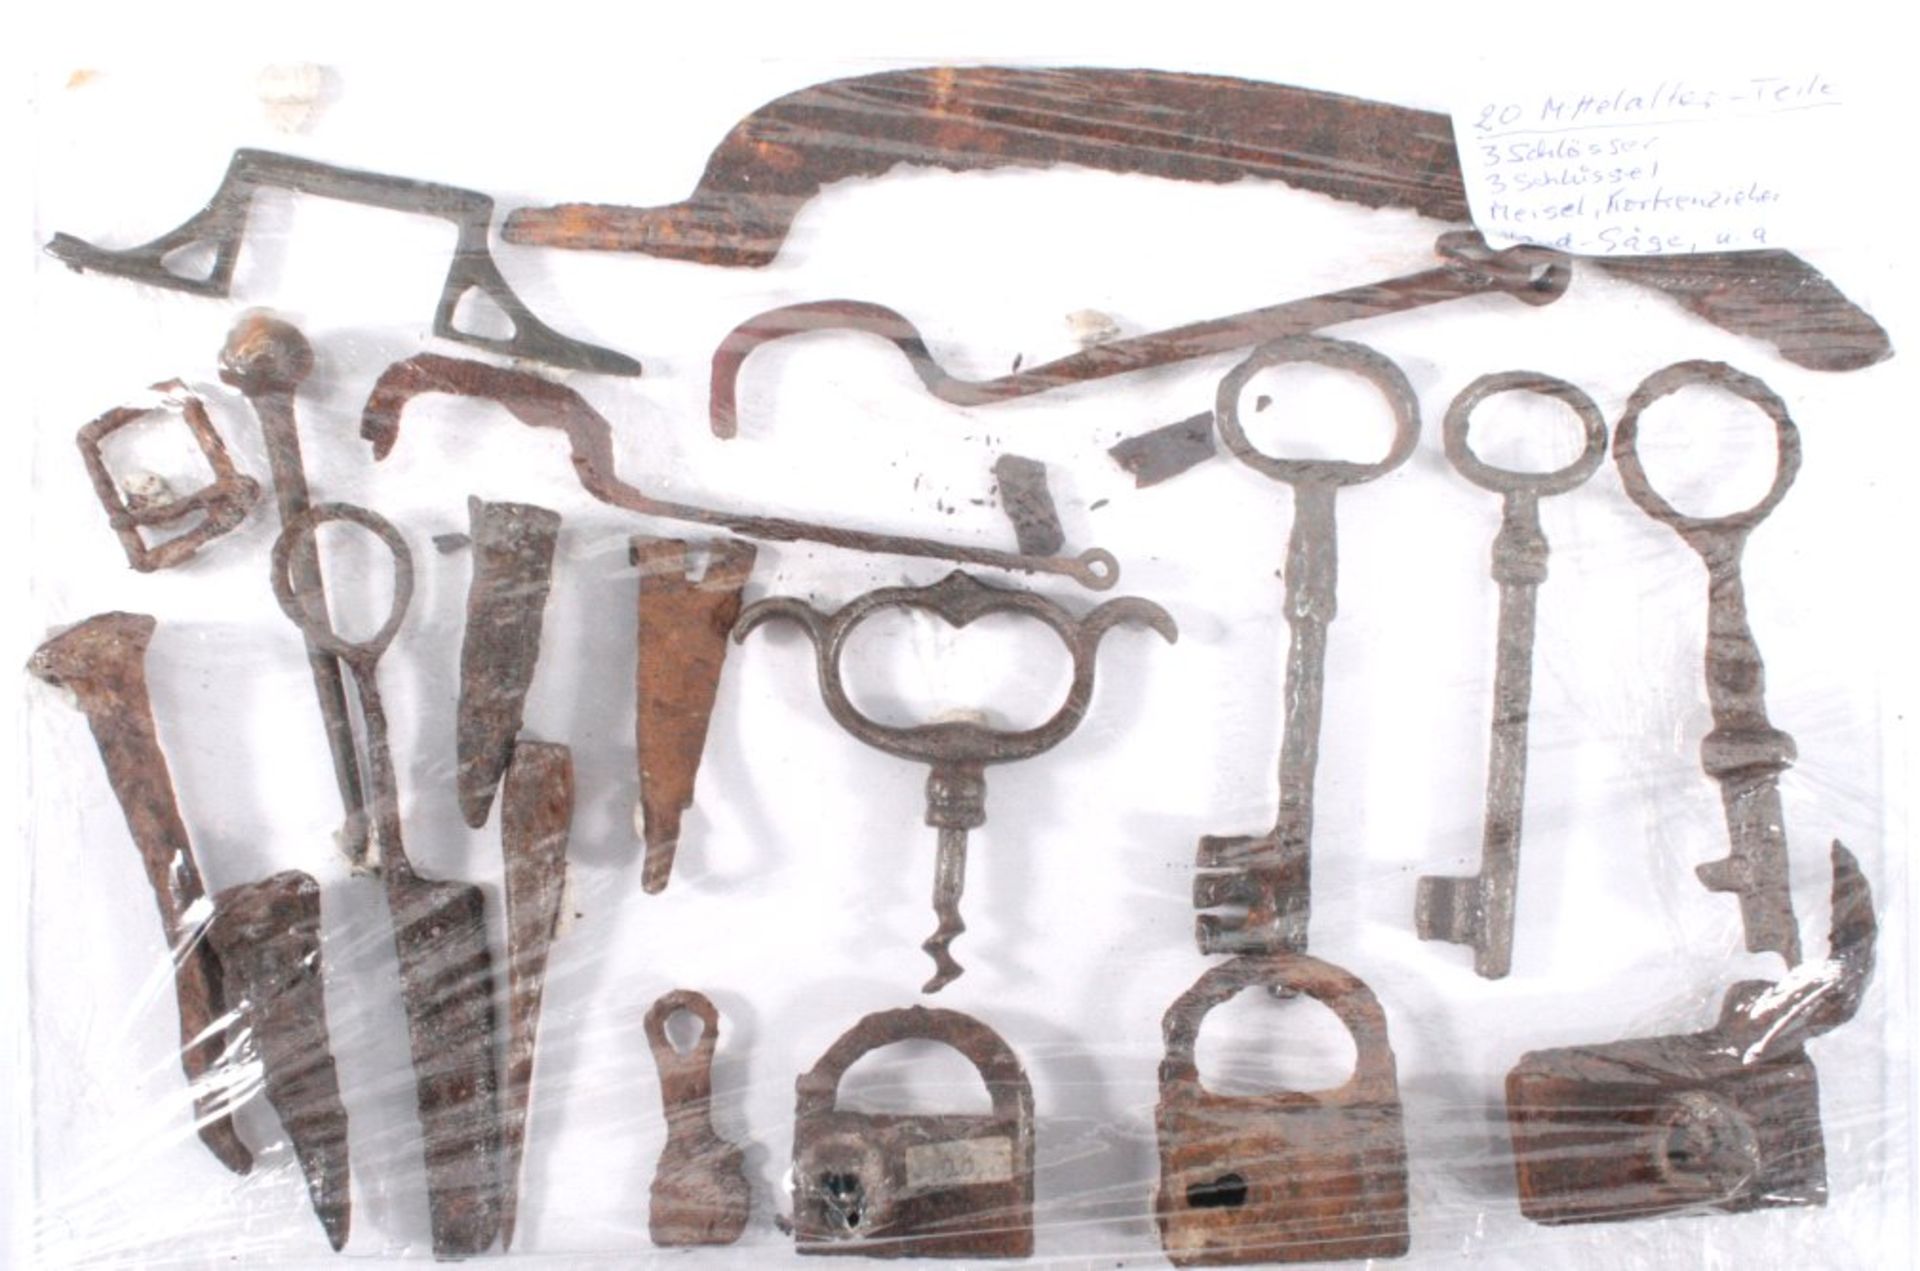 20 Teile aus dem Mittelalterverschiedene Formen (3x Schlösser, 3x Schlüssel, Meisel,Korkenzieher,